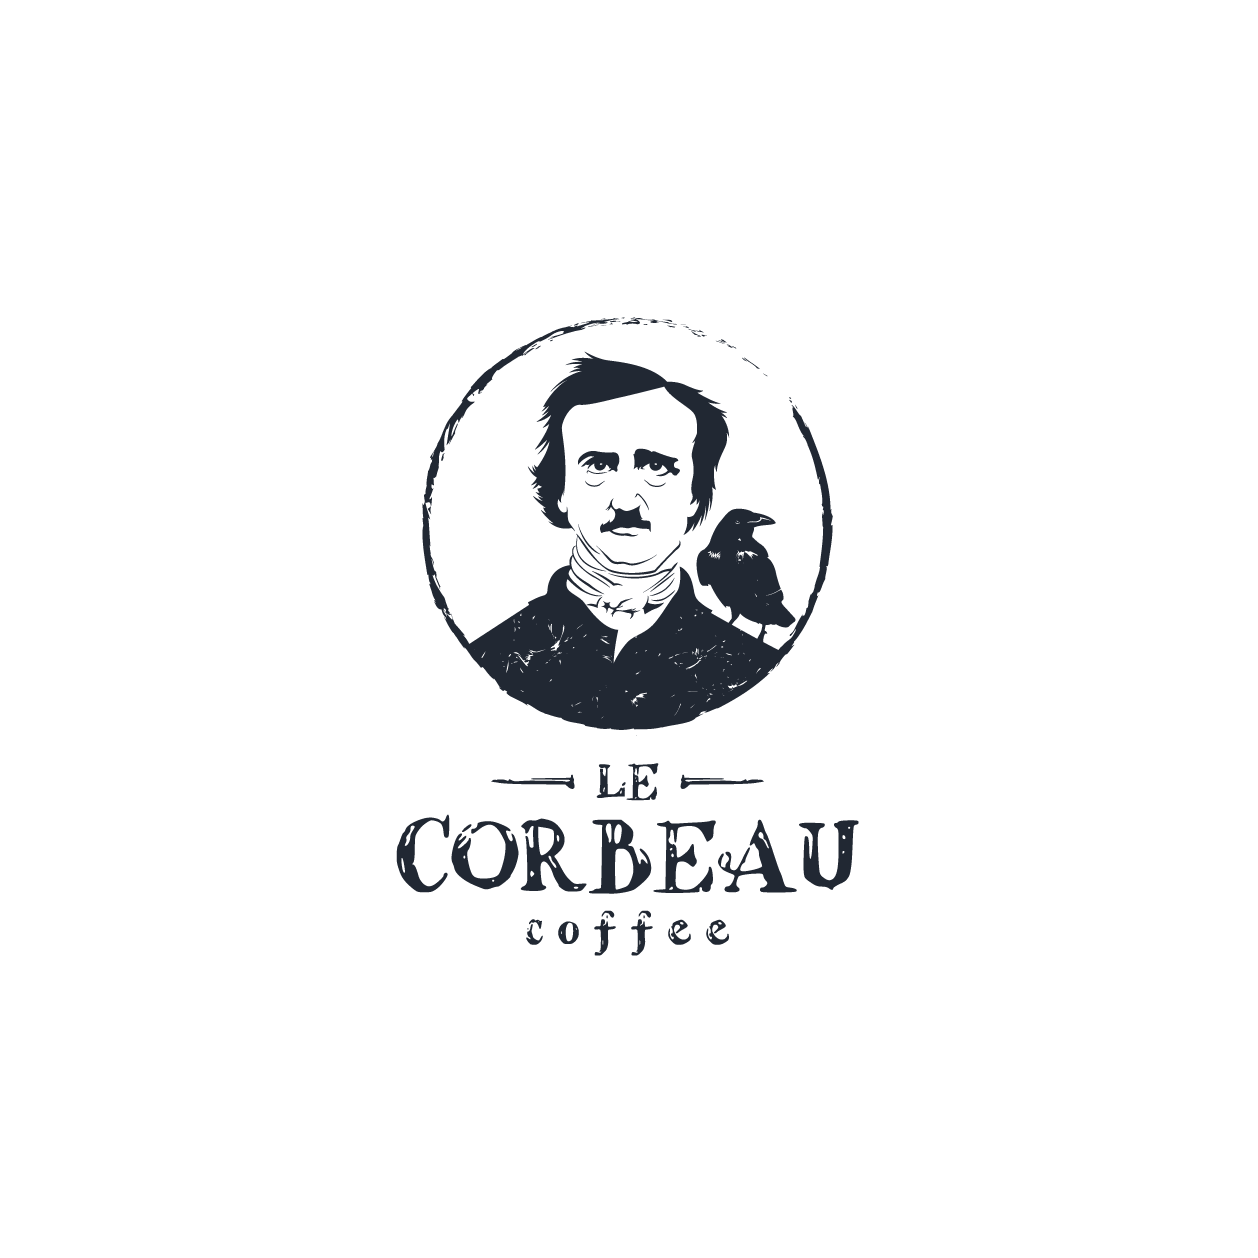 Diseño de café corbeau